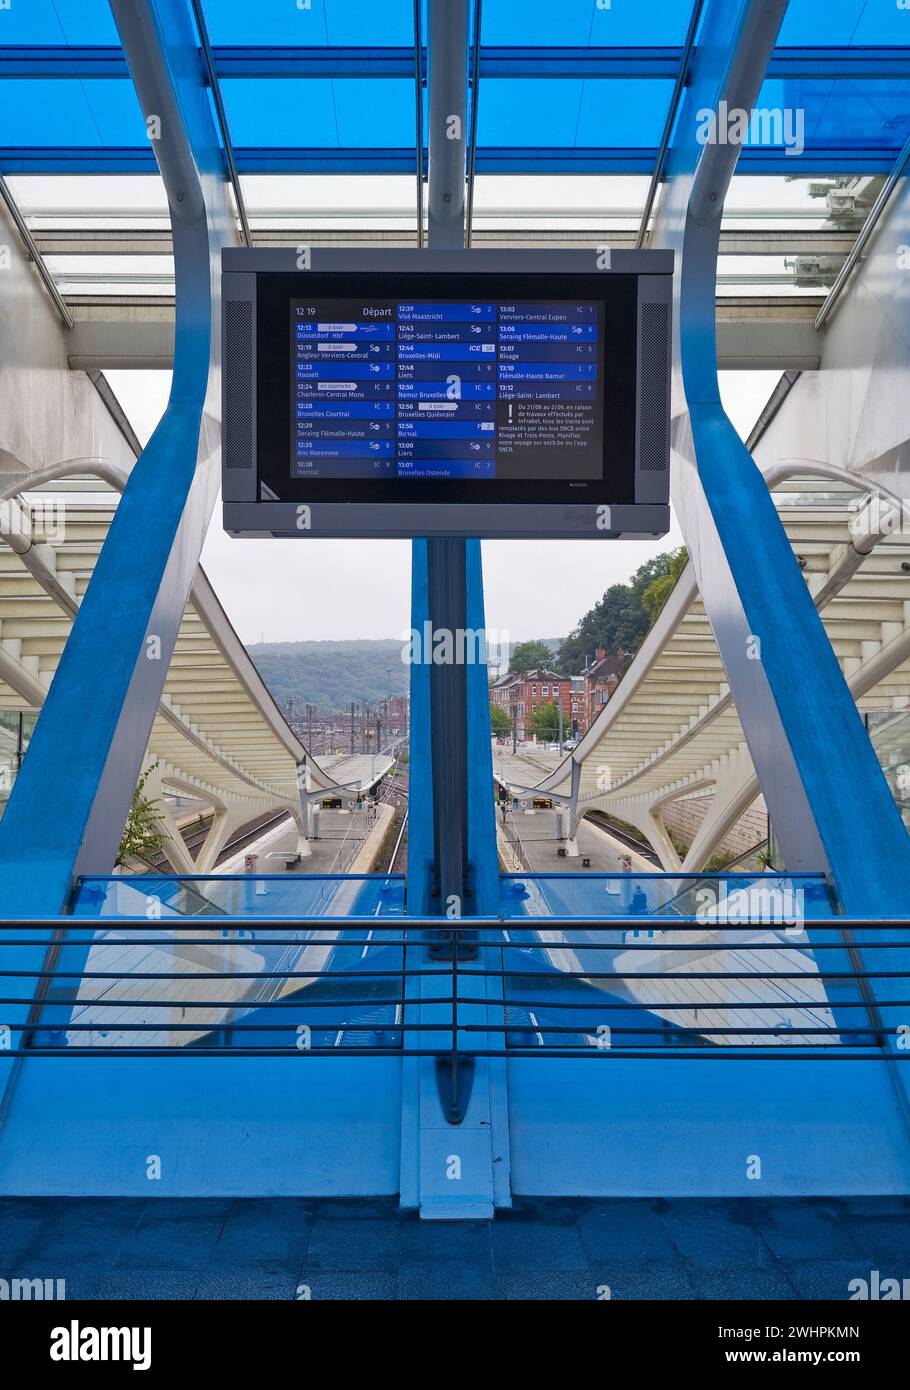 Bahnhof LiÃ¨ge-Guillemins mit Installation von Daniel Buren, LiÃ¨ge, Belgien, Europa Stockfoto